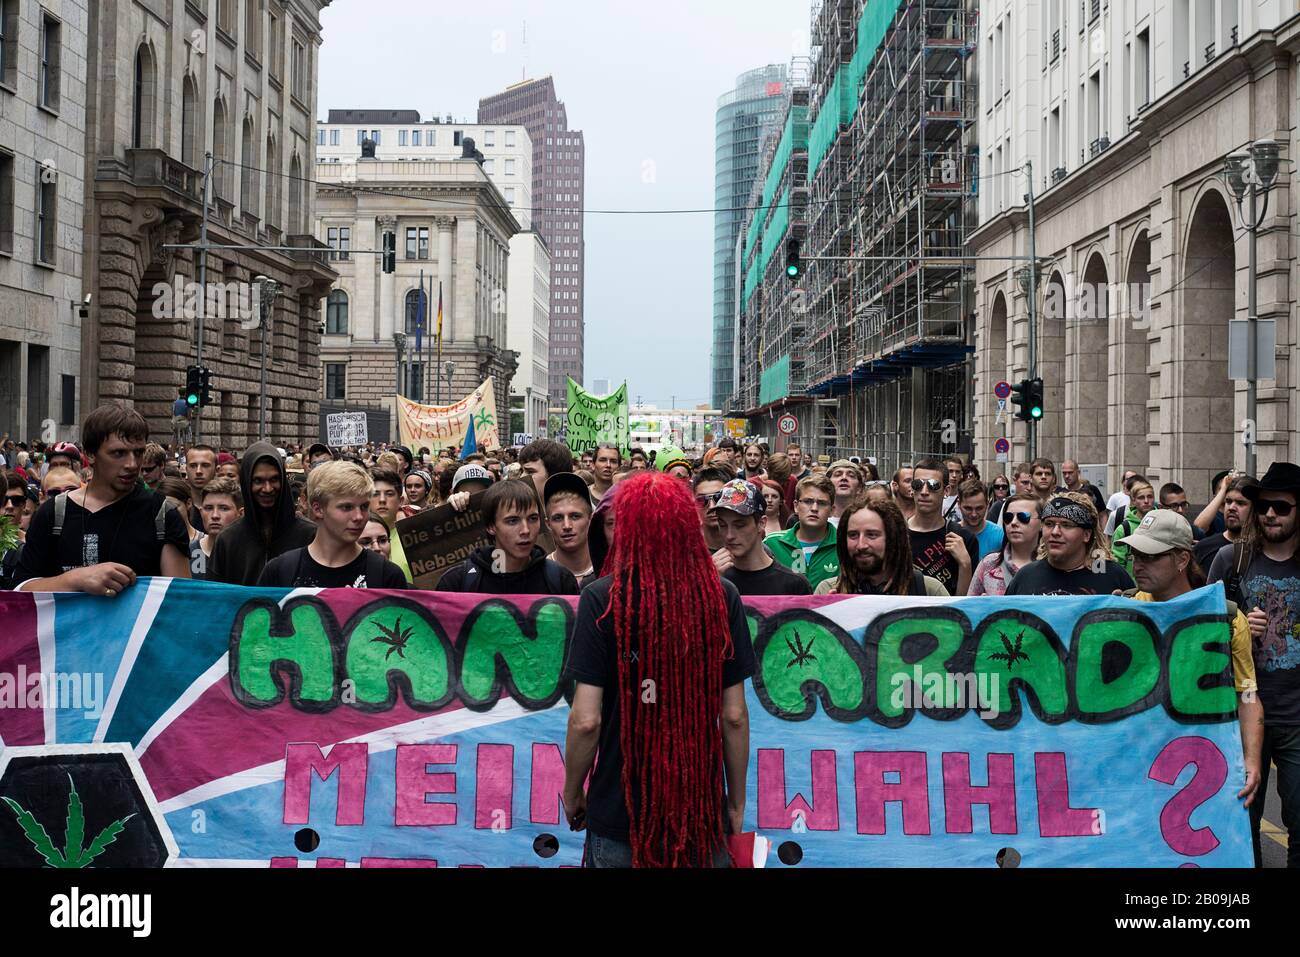 La 17 manifestation annuelle appelant à la légalisation du cannabis a eu lieu à Berlin. L'événement a commencé à la gare Zoologischer Garten et les participants ont marché dans les rues pendant environ deux heures. Plus de 6 500 personnes y ont participé. Banque D'Images